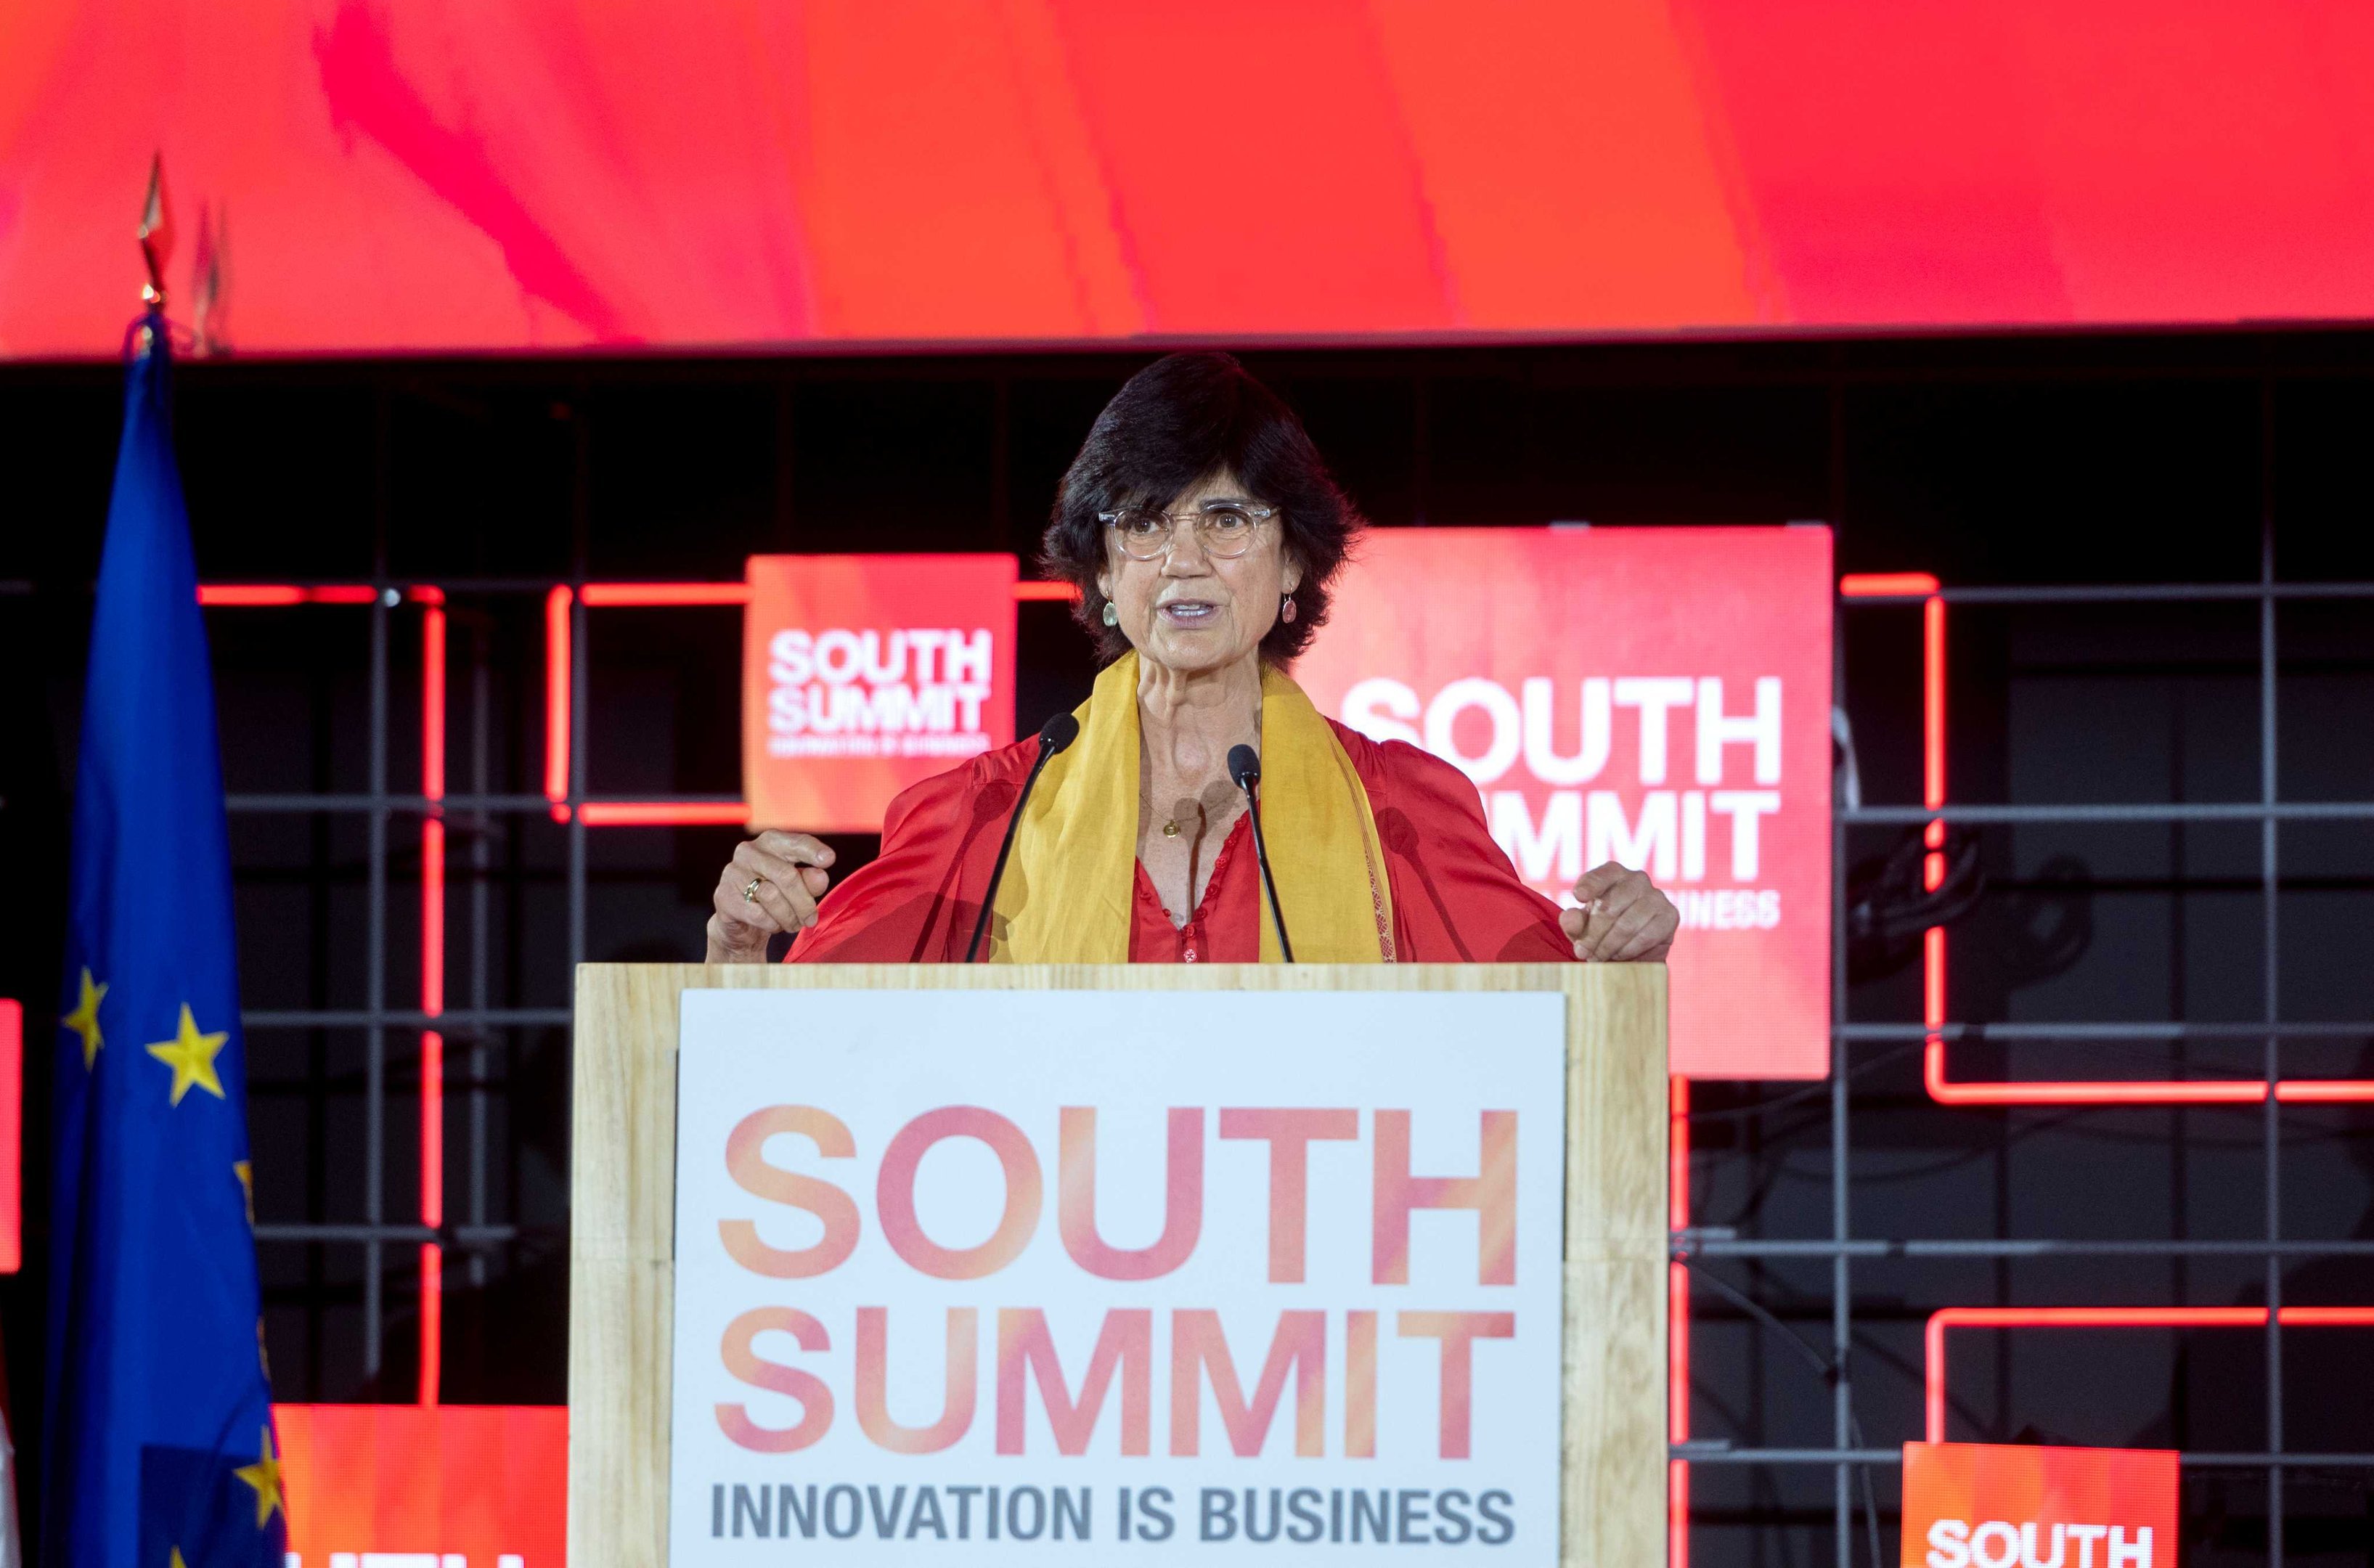 Ela criou o South Summit, festival de inovação que deve reunir 20.000 pessoas em Madri nesta semana